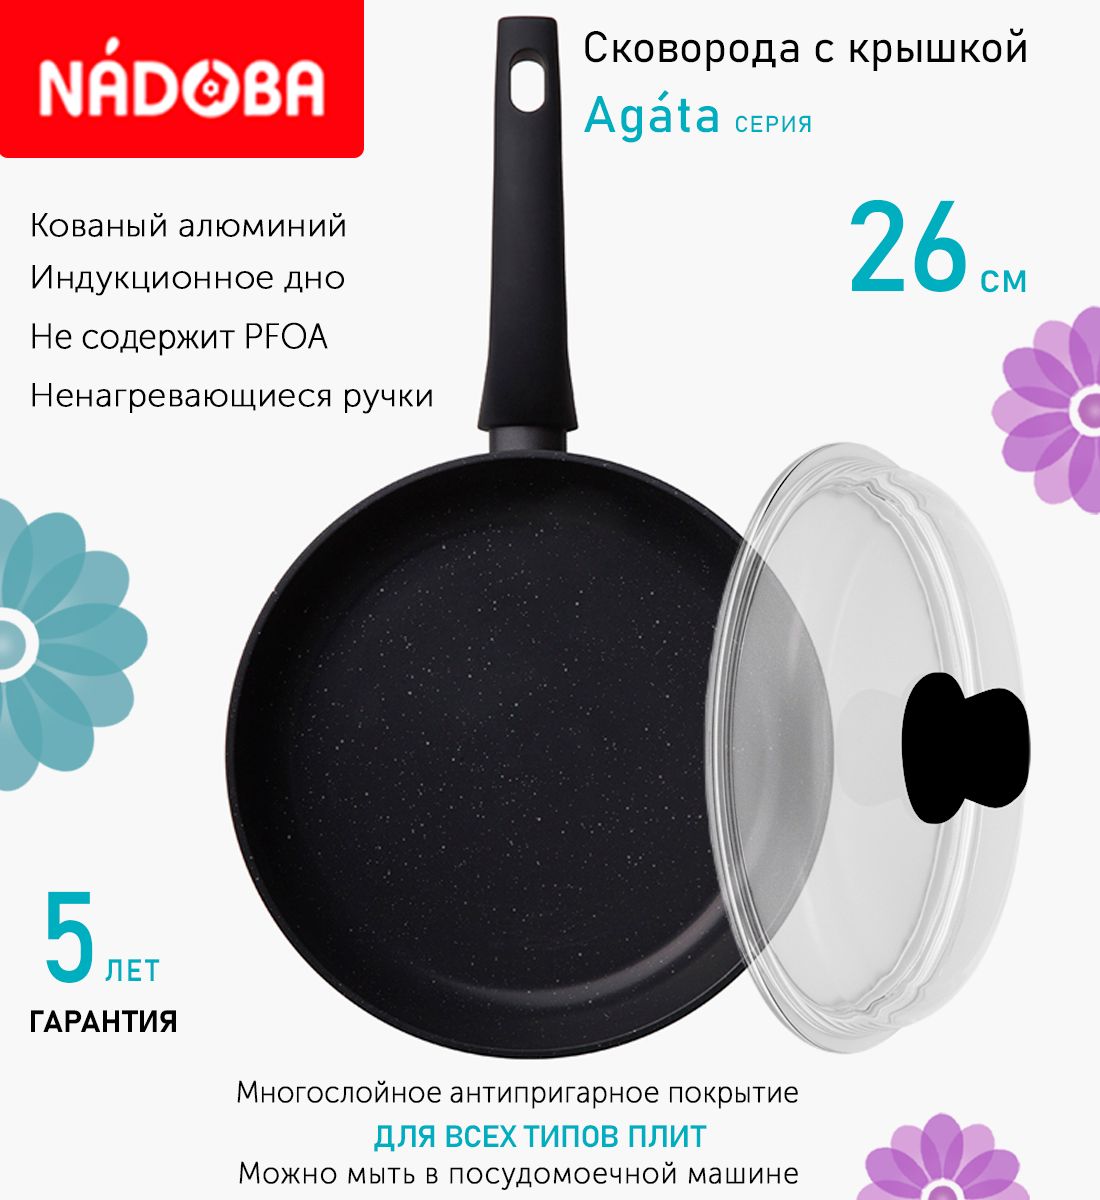 Сковорода с крышкой NADOBA 26 см серия Agata